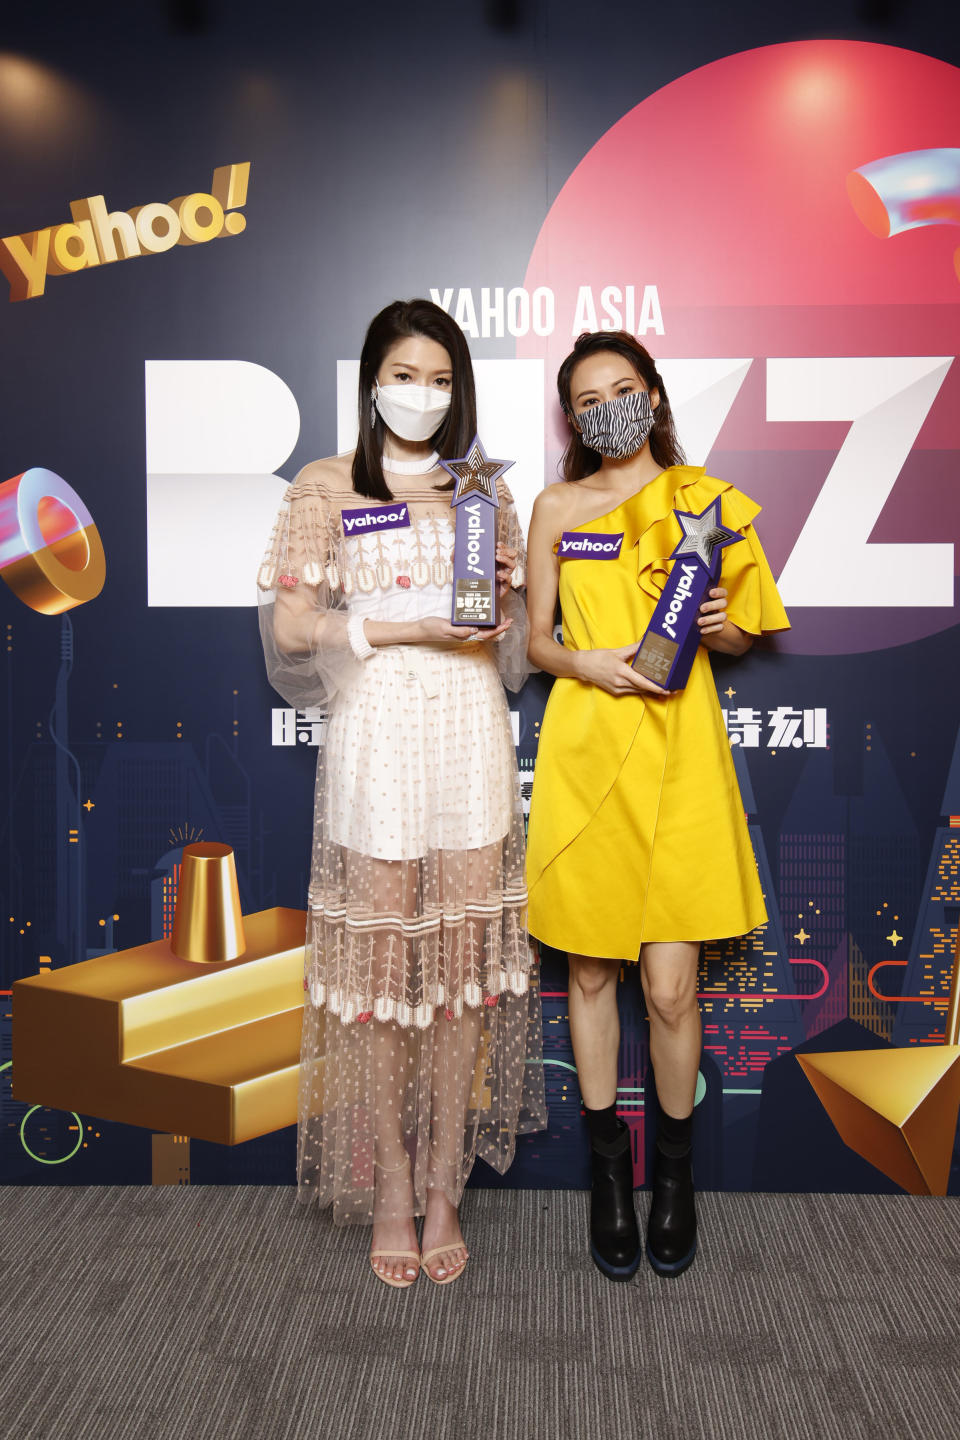 【Yahoo搜尋人氣大獎2020】連詩雅亦都獲得「人氣急星獎」